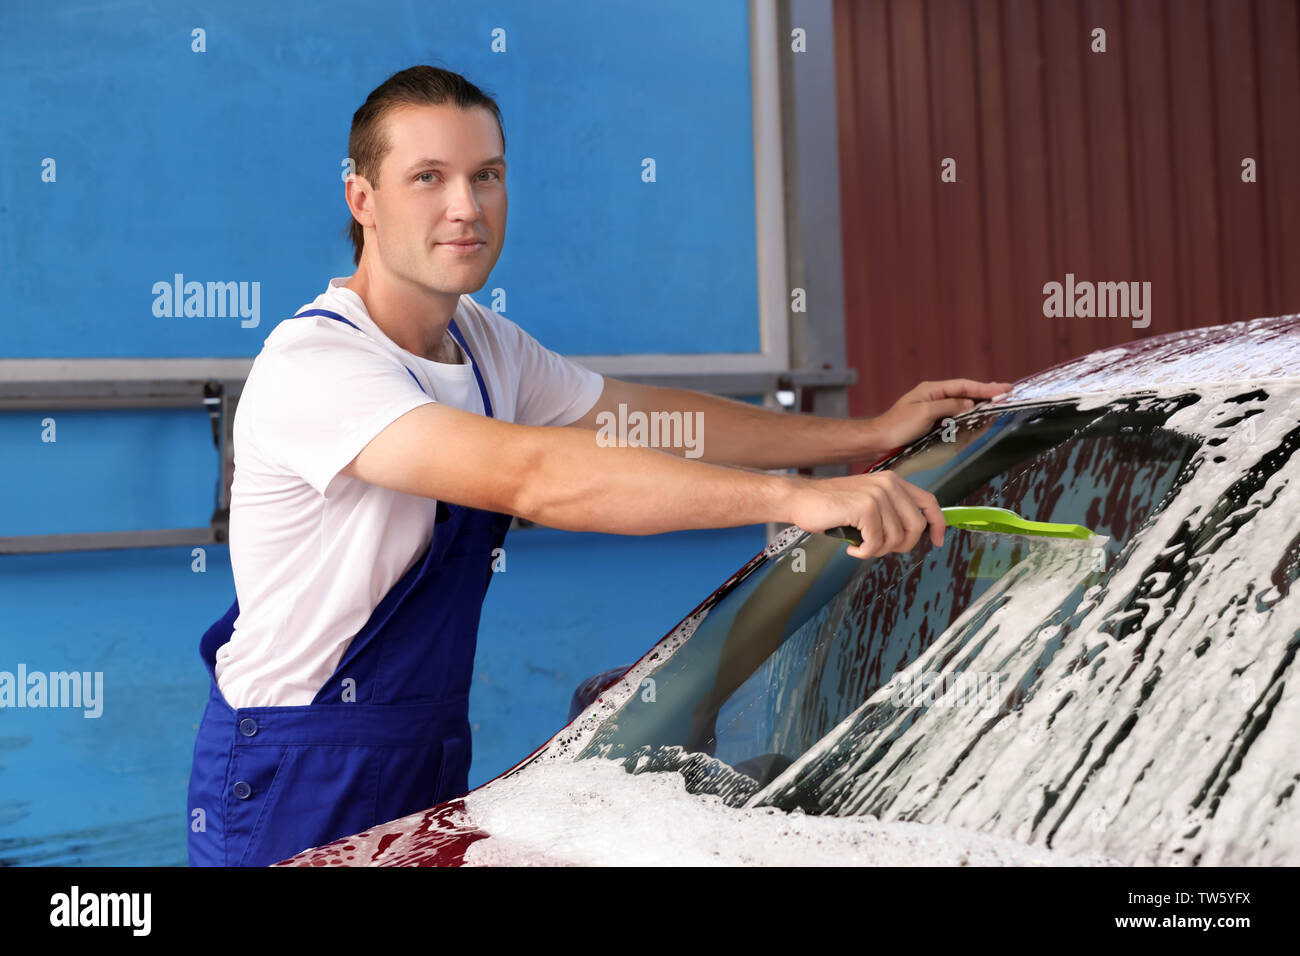 L'homme à la raclette de pare-brise automobile nettoyage au lavage de voiture Banque D'Images